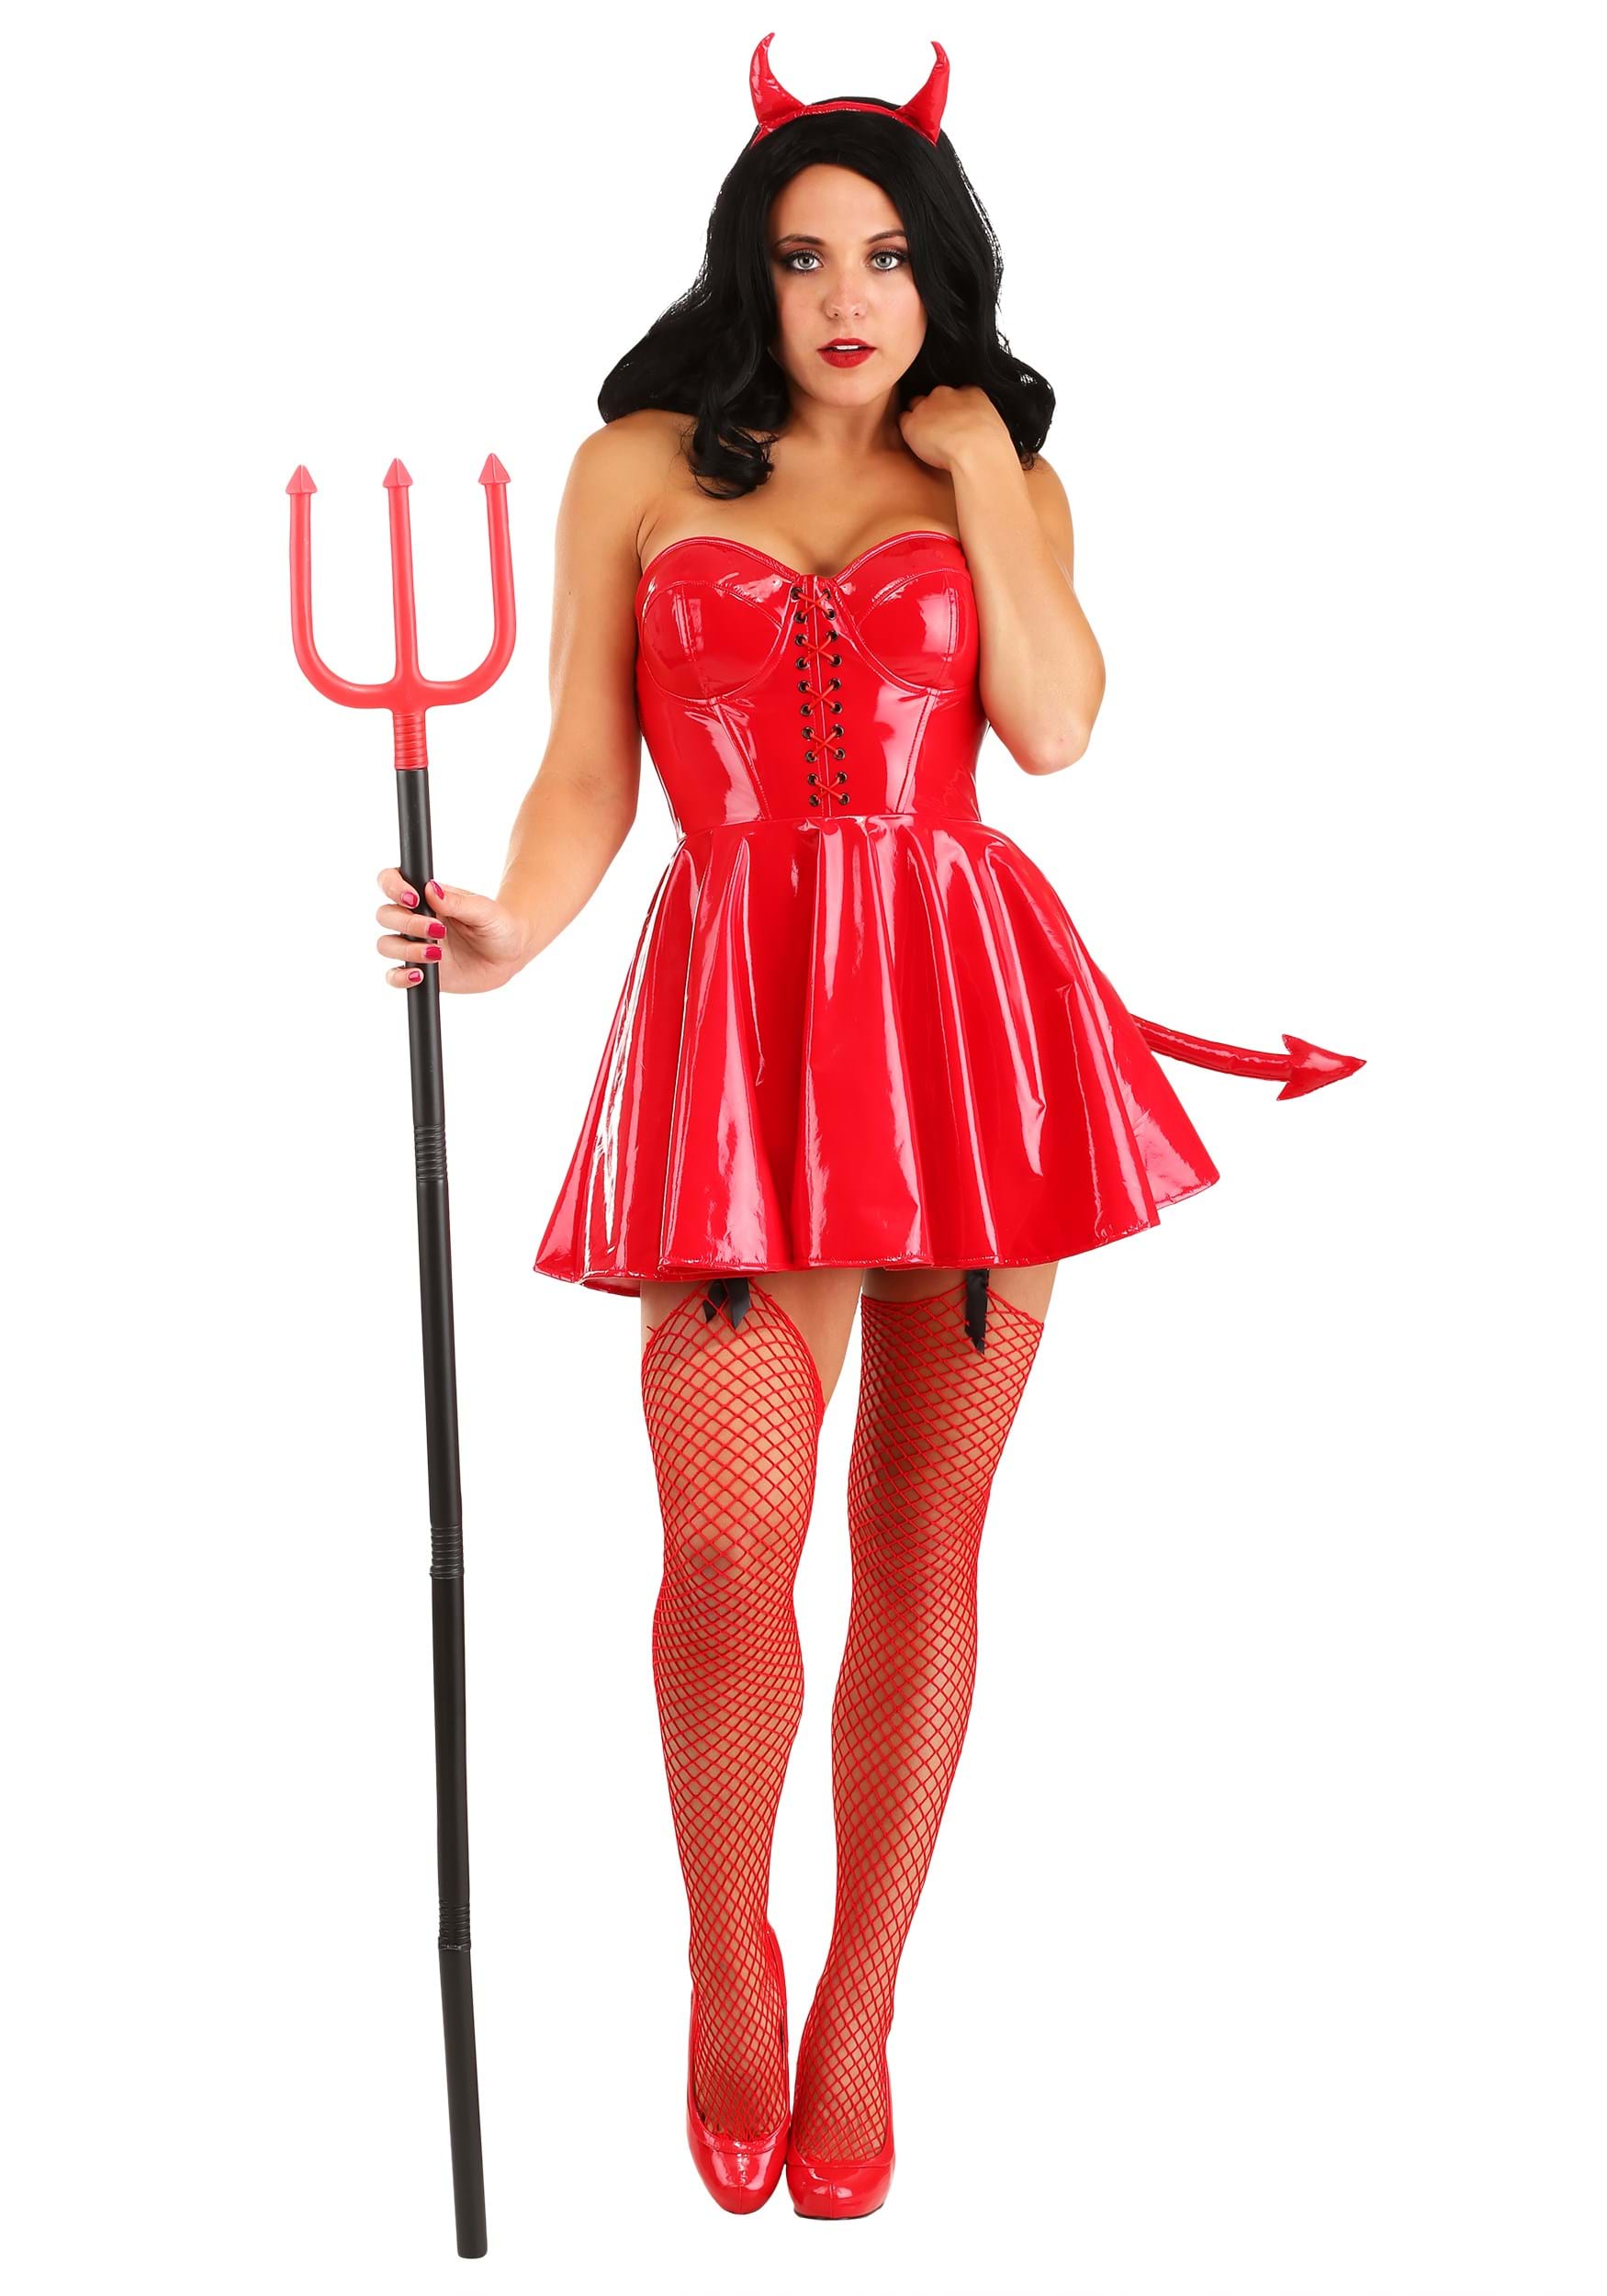 Red Hot Devil Costume for Women.